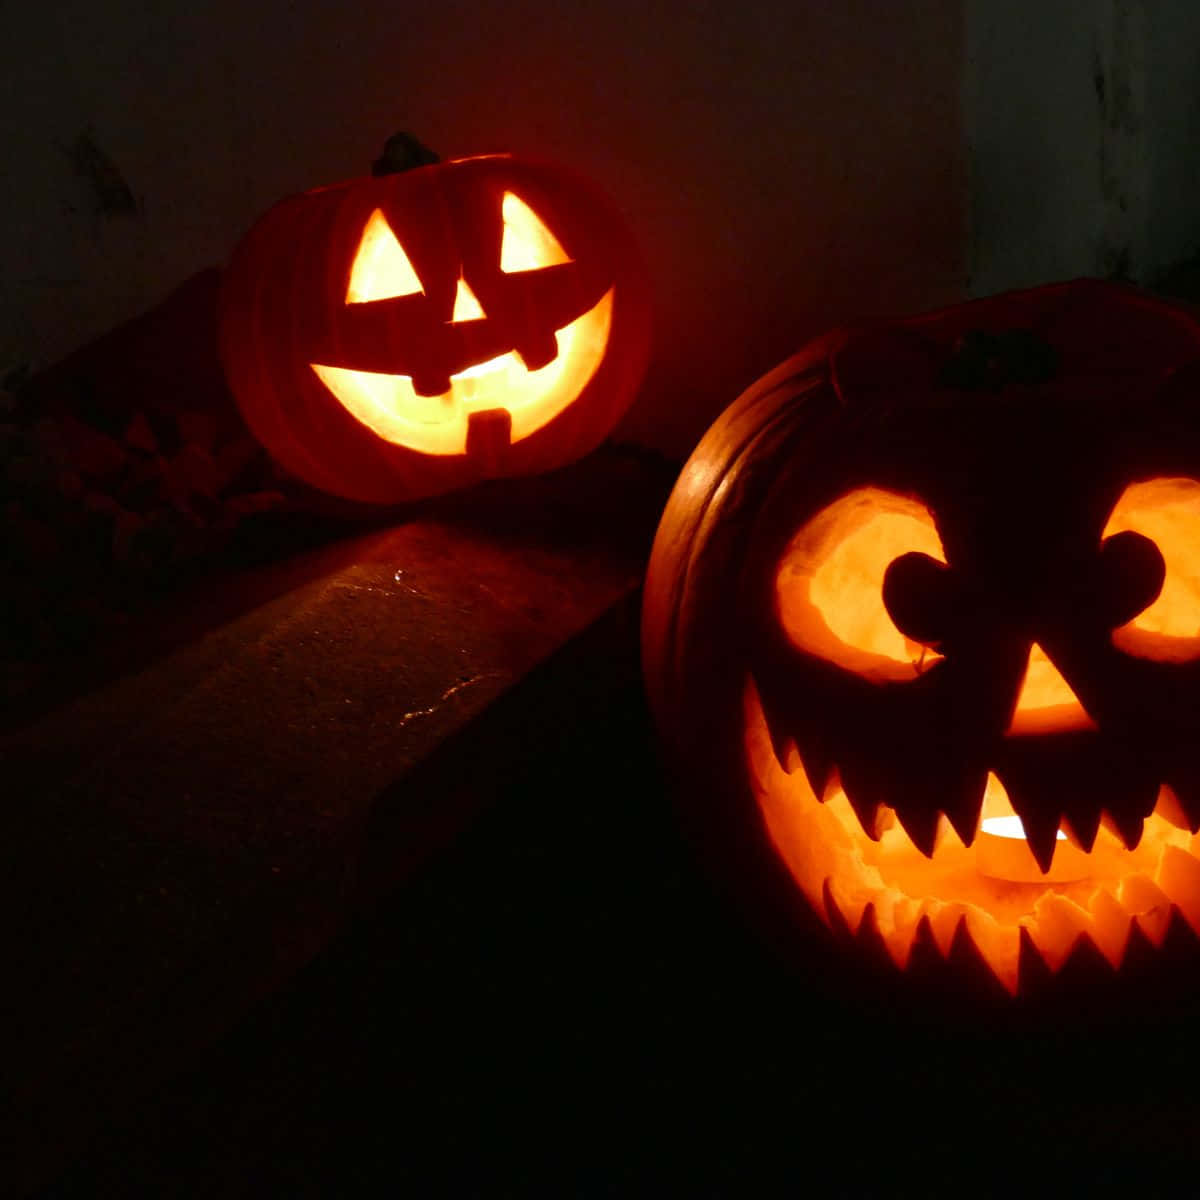 Spooky Design Halloween Pumpkin Pictures